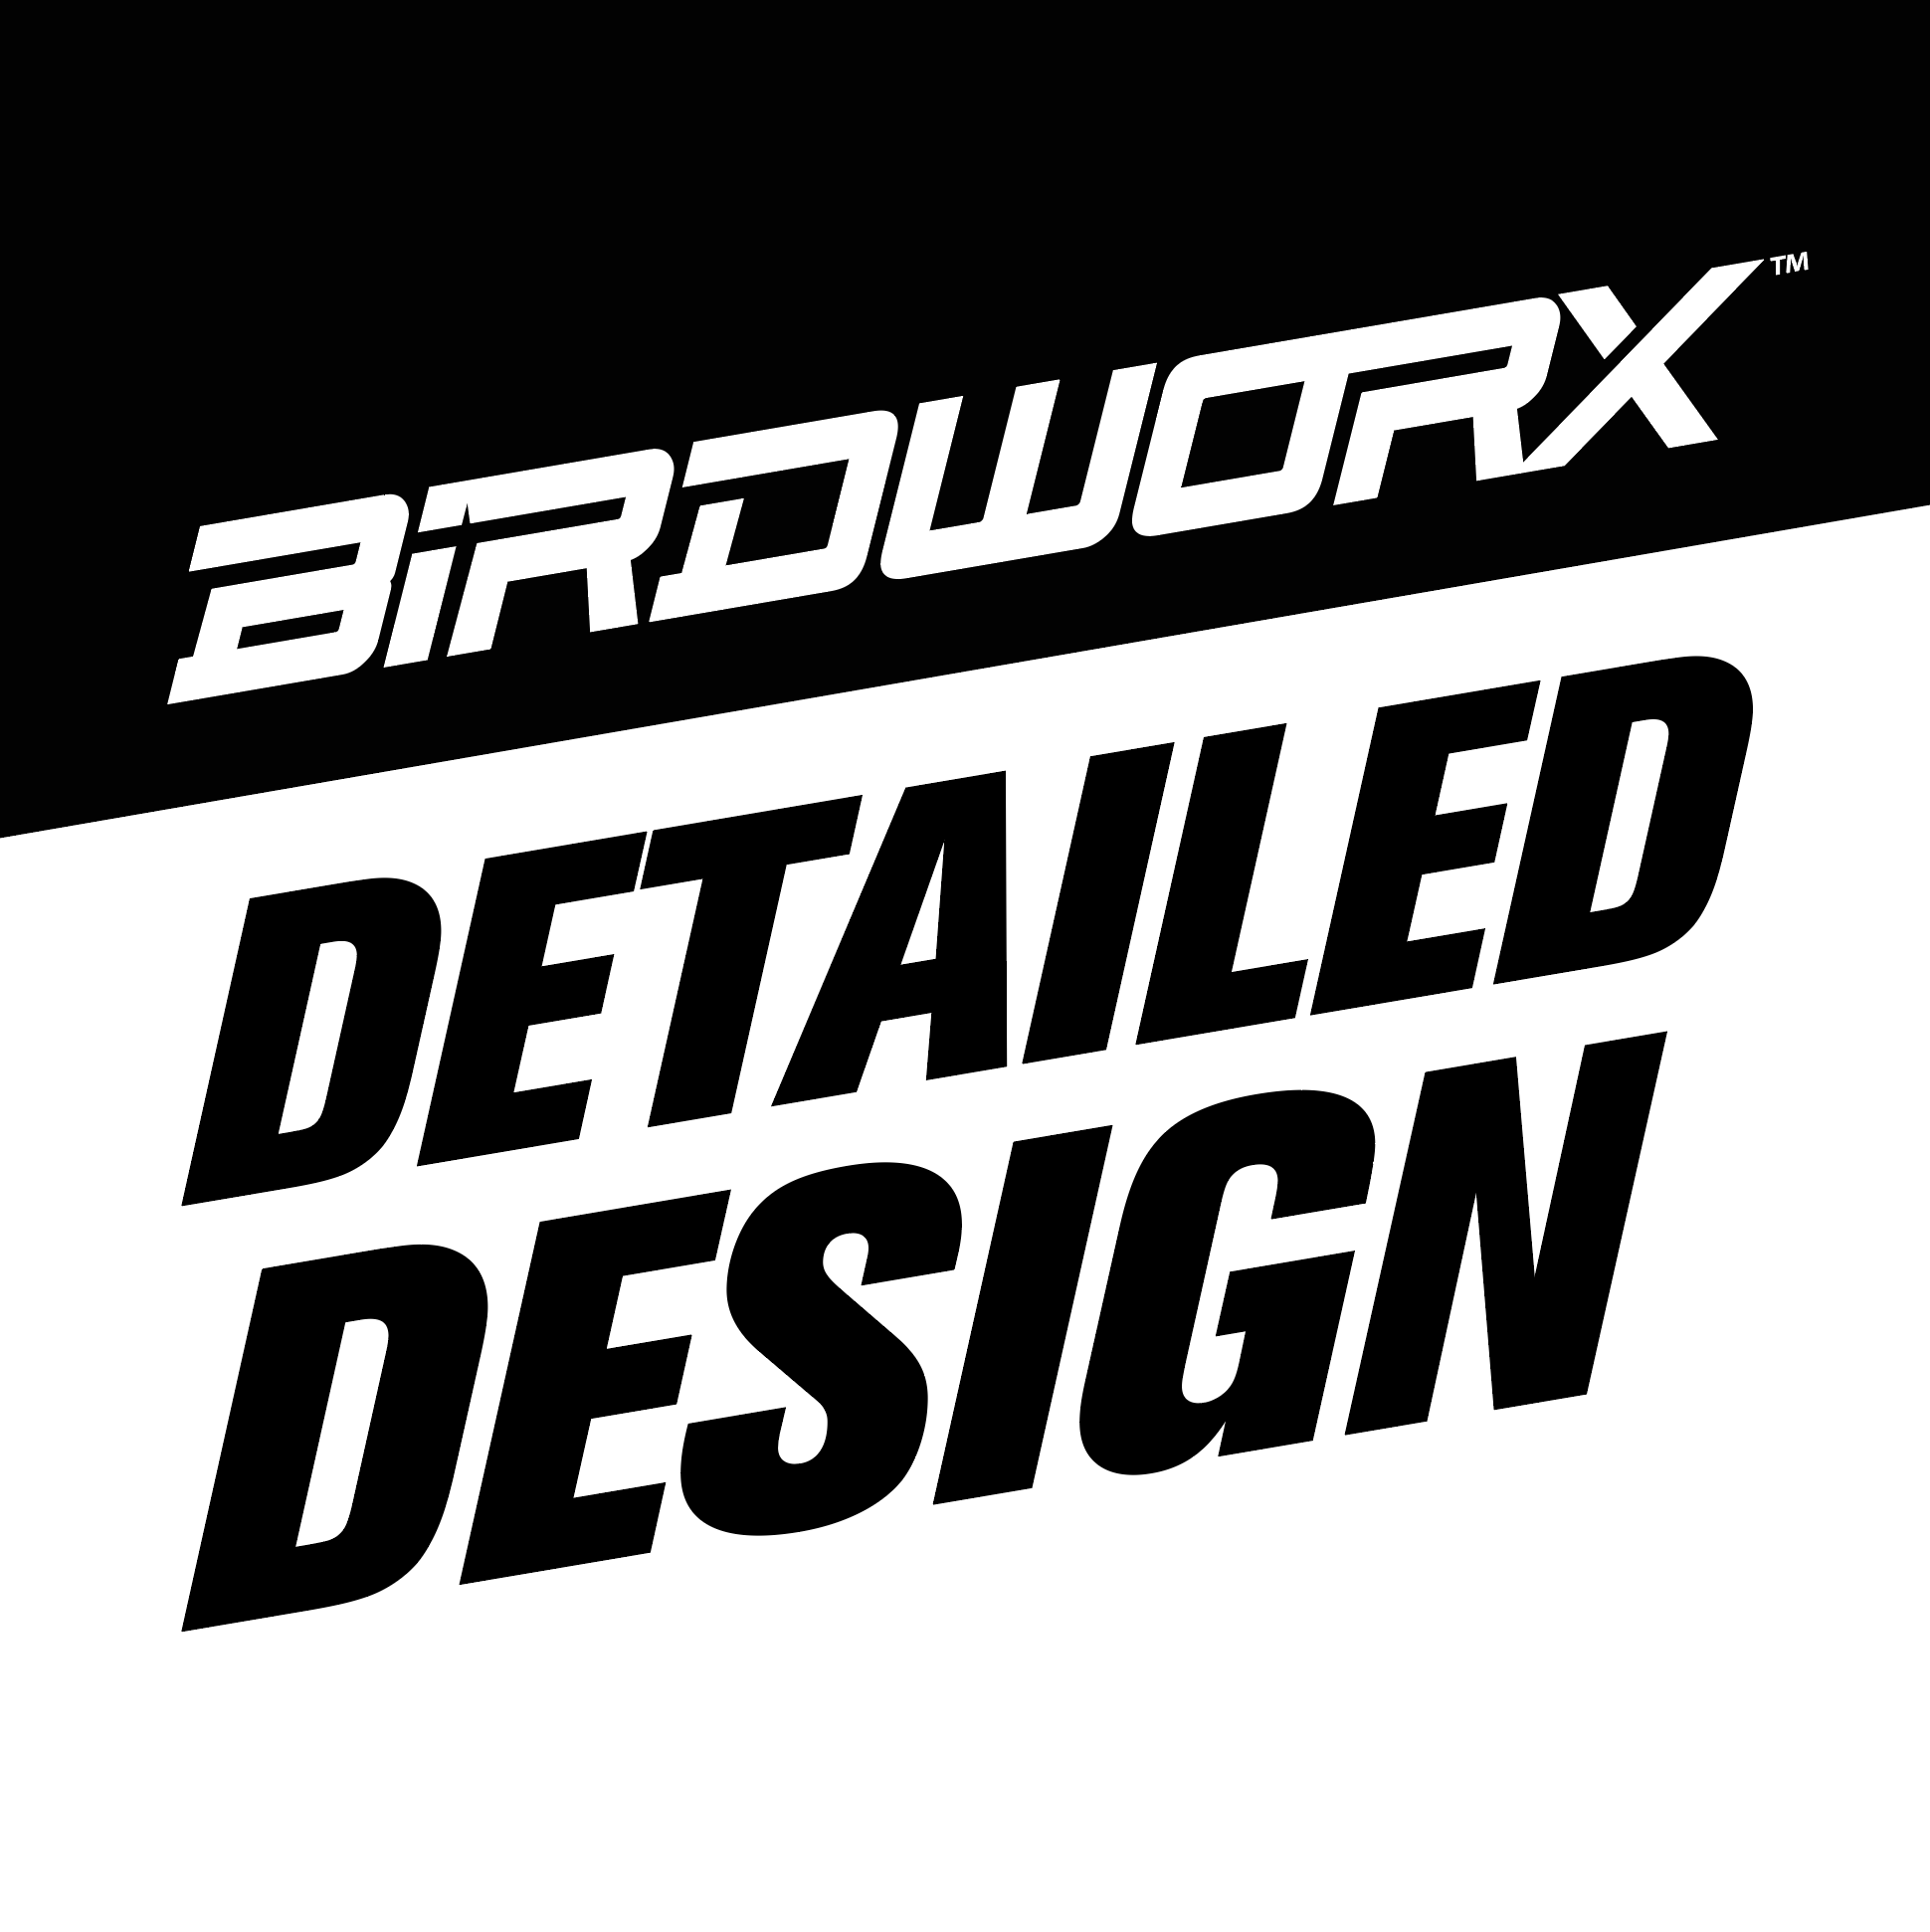 Birdworx Detailed Design - $45